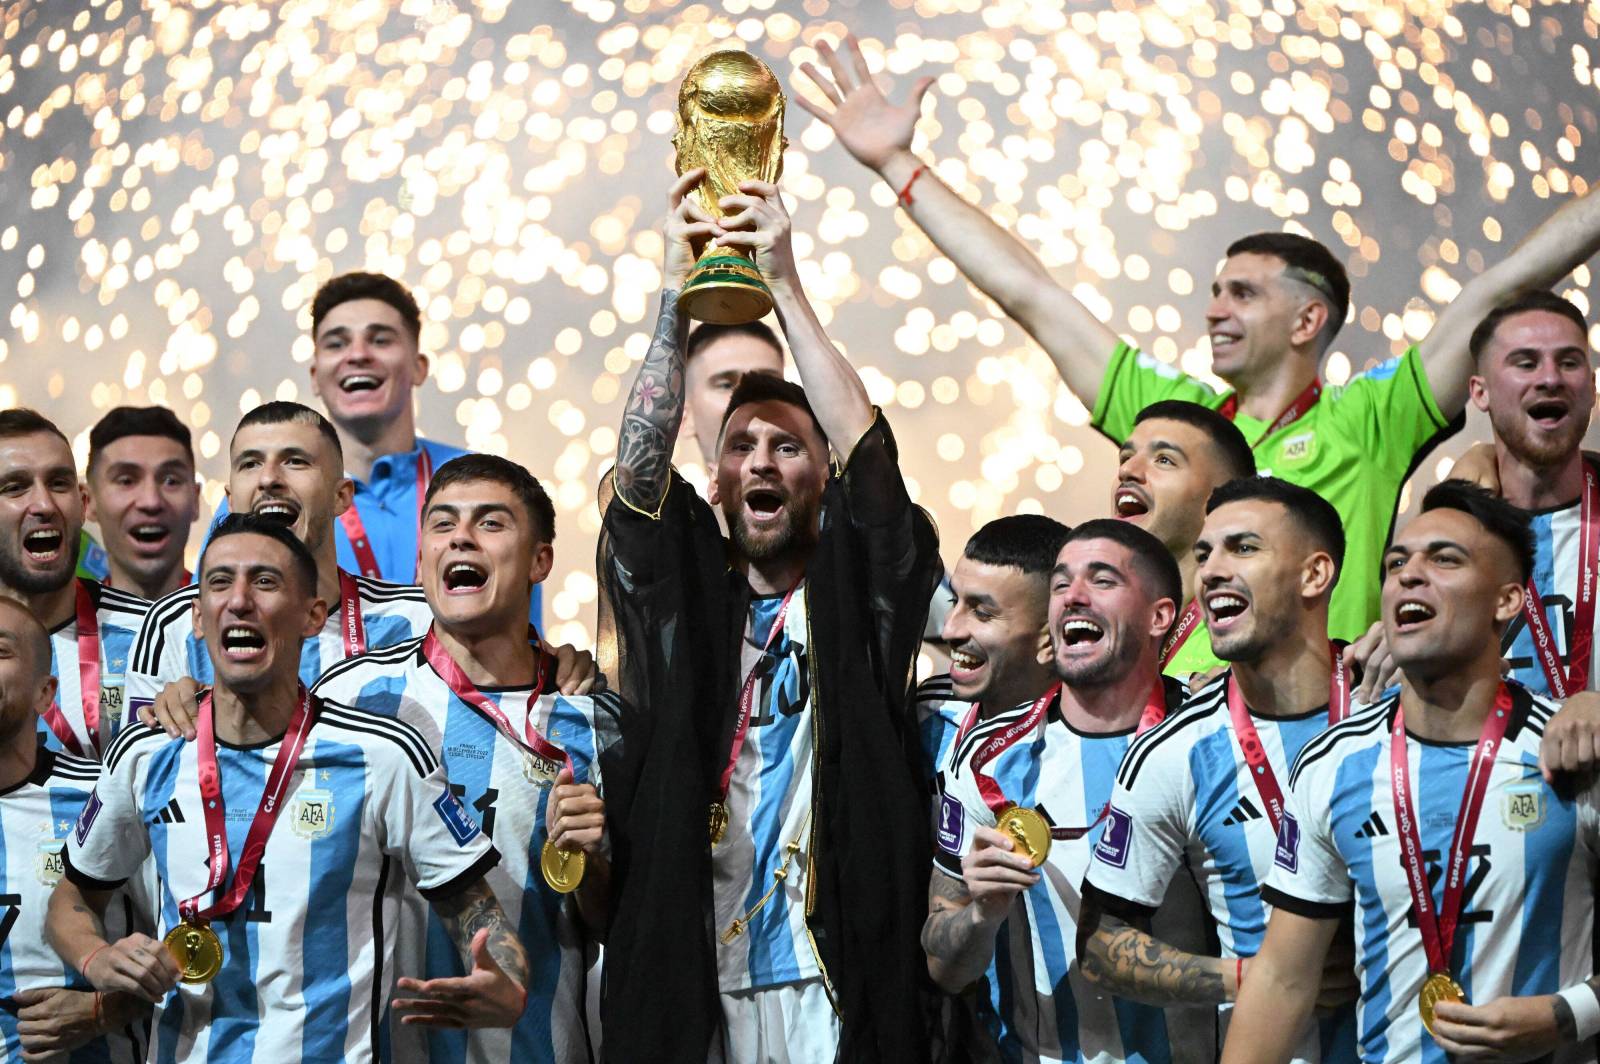 Он великий, он сделал это! Месси с Аргентиной выиграли чемпионат мира, победив Францию в сумасшедшем финале-триллере